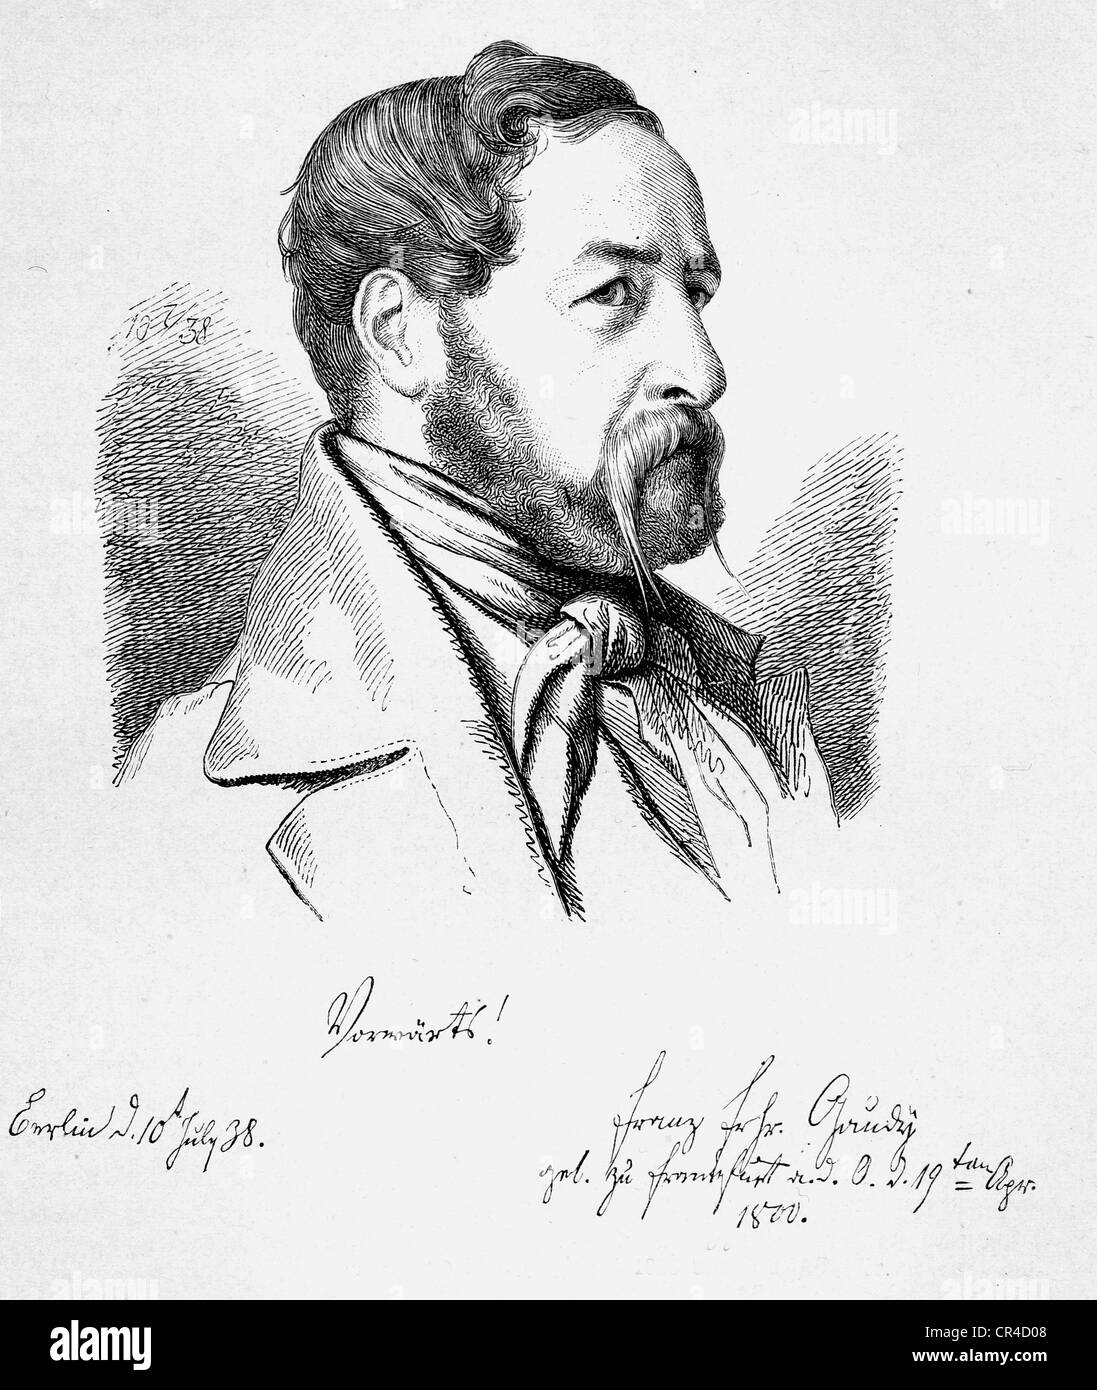 Franz von Gaudy (1800 - 1840), poet, drawn by F. Kugler, 1838 Stock Photo